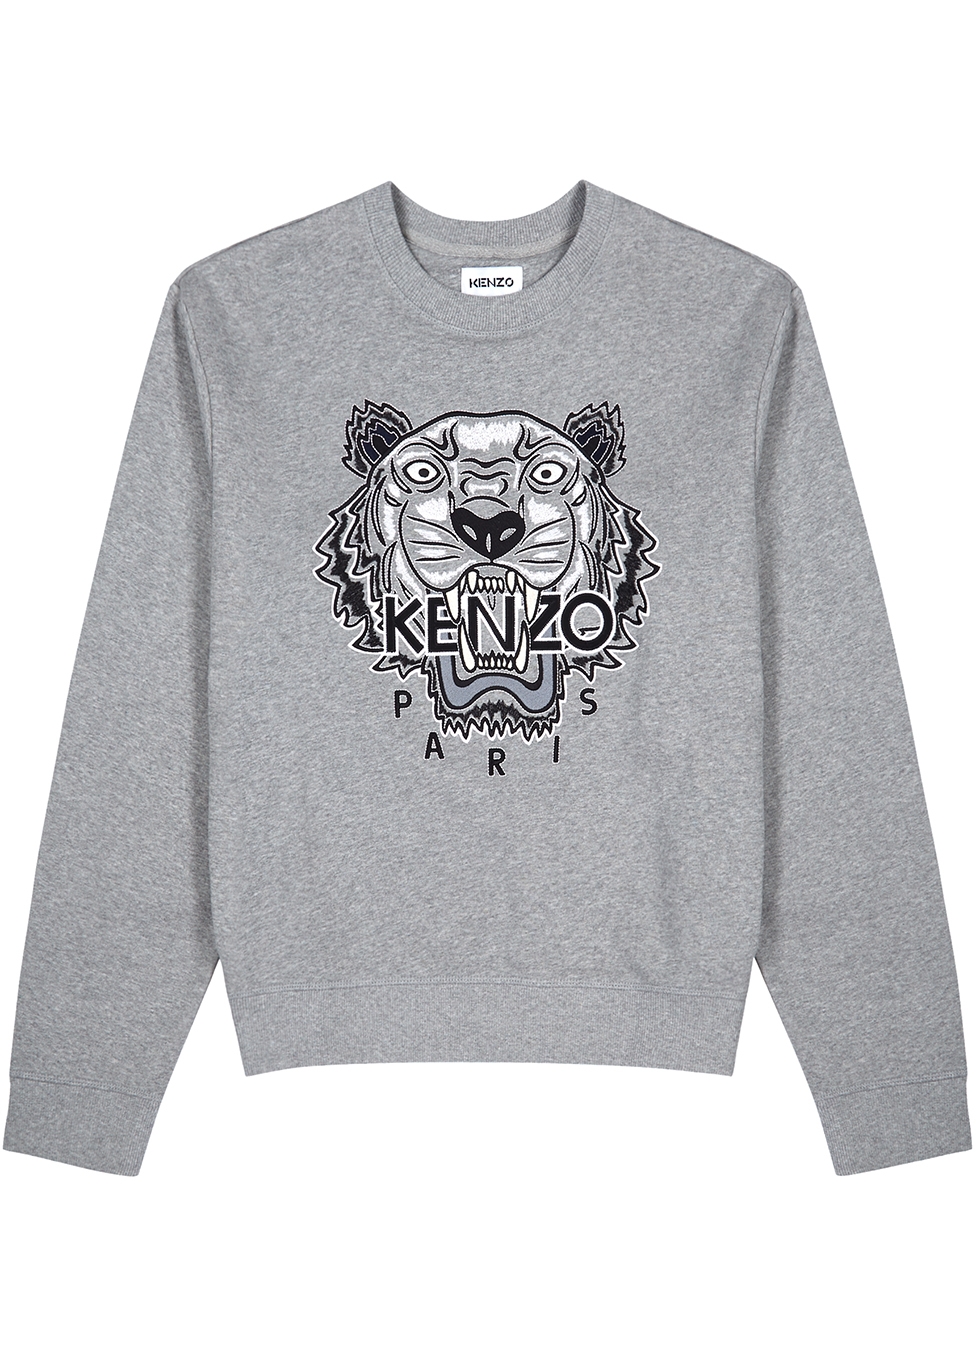 grey kenzo sweatshirt